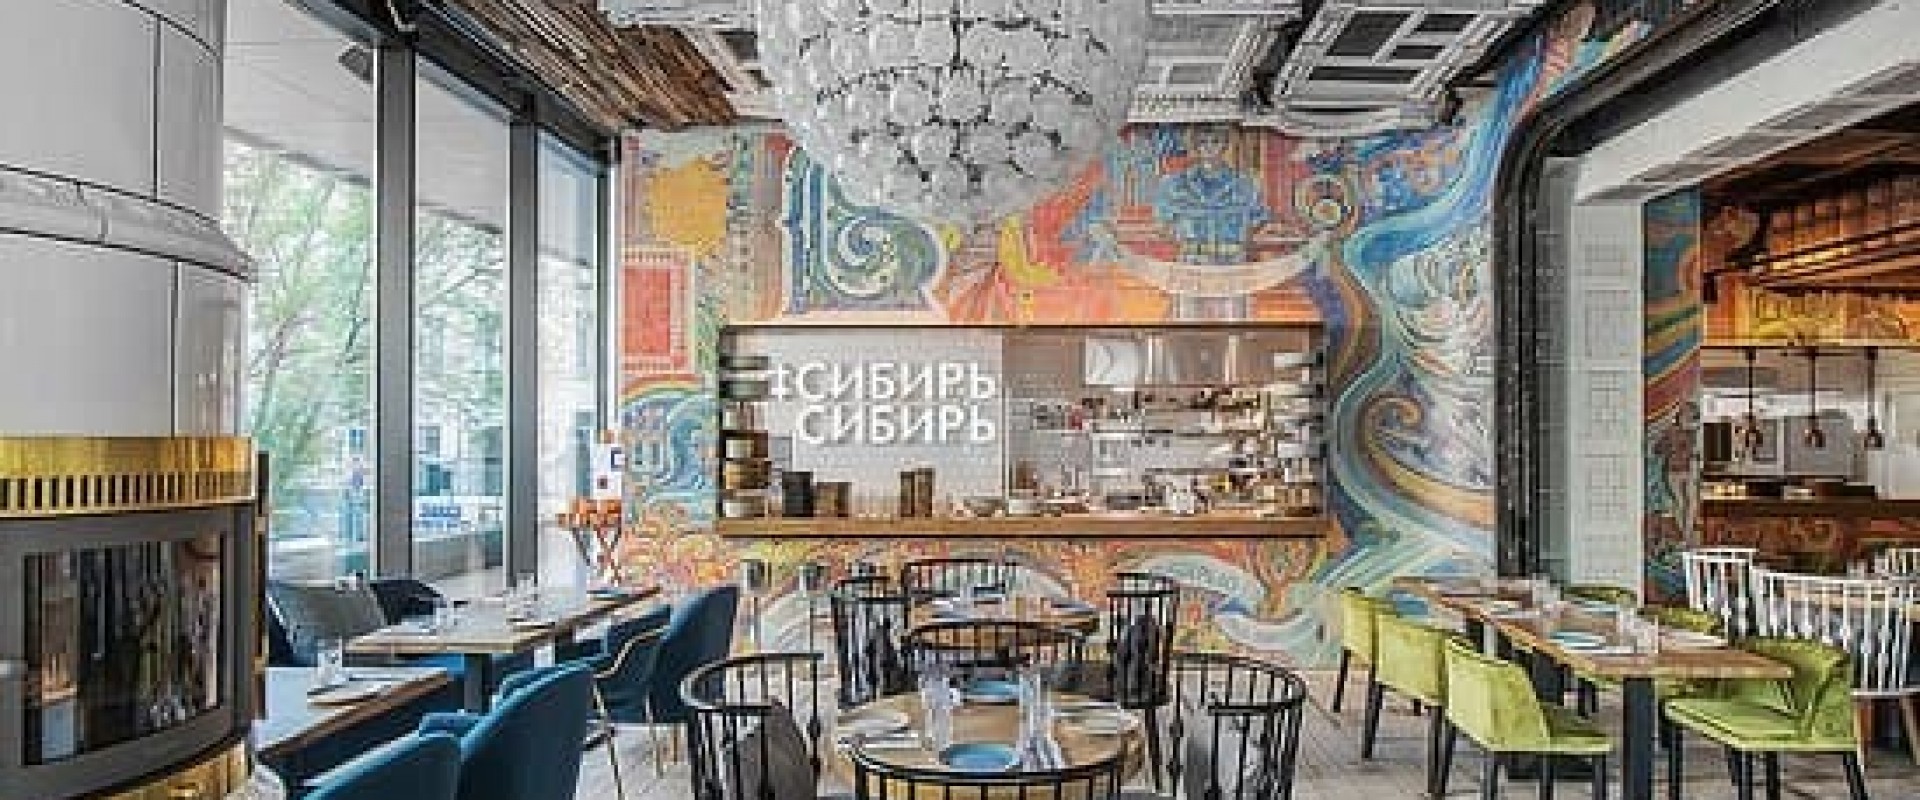 Карта ресторанного бизнеса в России. Выпуск 1: Новосибирск + Тюмень